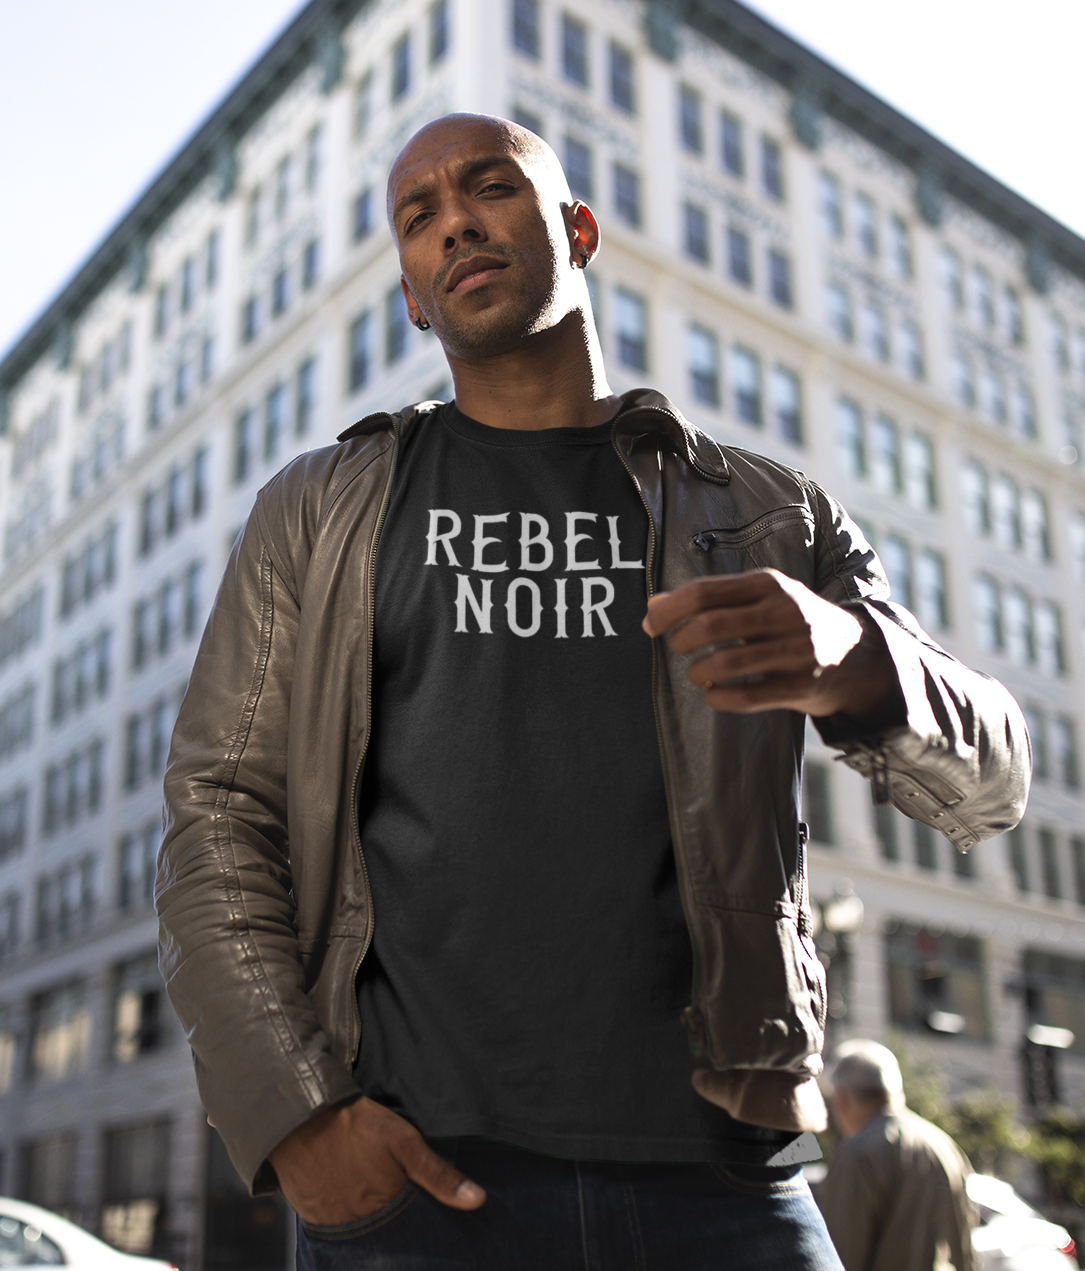 REBEL NOIR CLOTHING CO – Rebel Noir Clothing Company